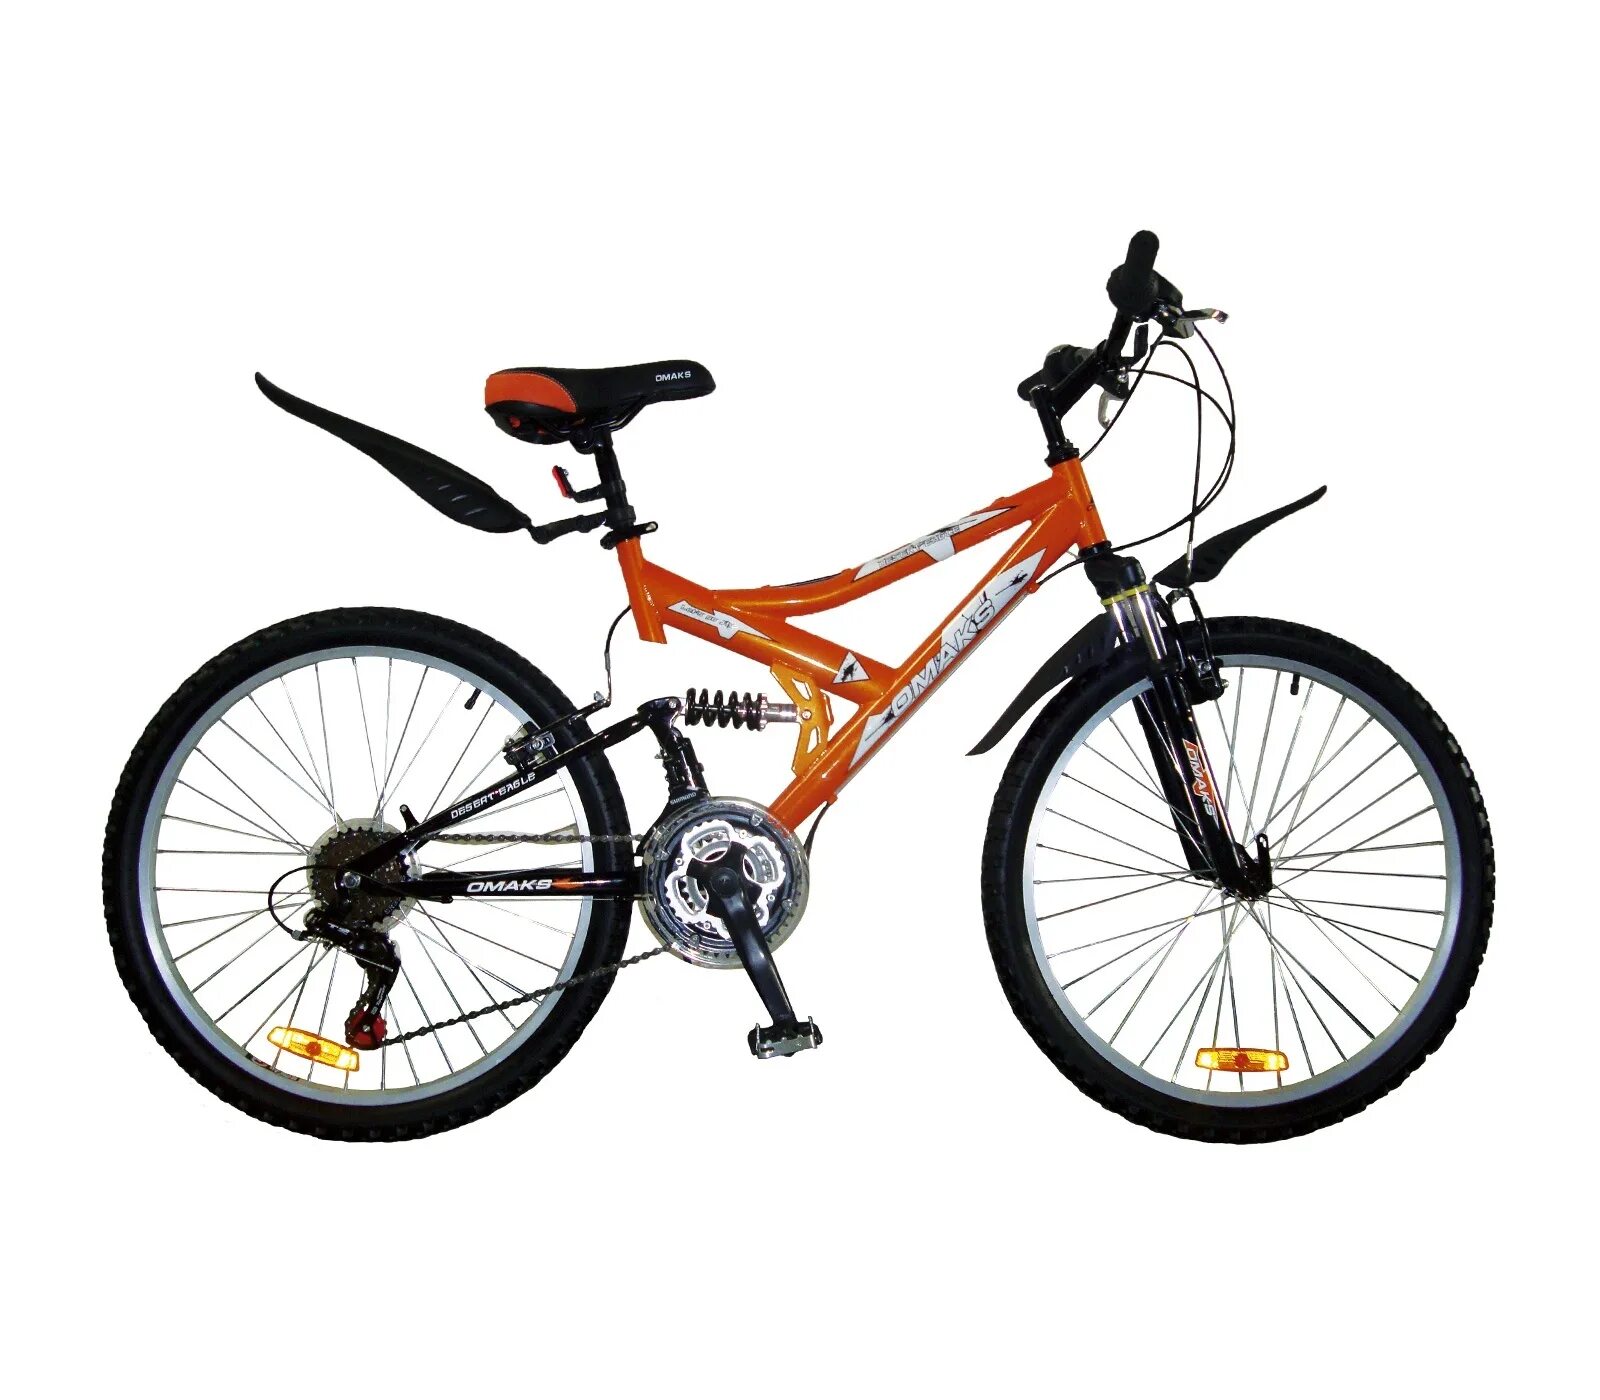 Велосипеды в орле магазины цены. Стелс скоростной оранжевый. Велосипед стелс оранжевый скоростной. Велосипед.скоростной стелс 24 скорости. Велик стелс скоростной оранжевый.